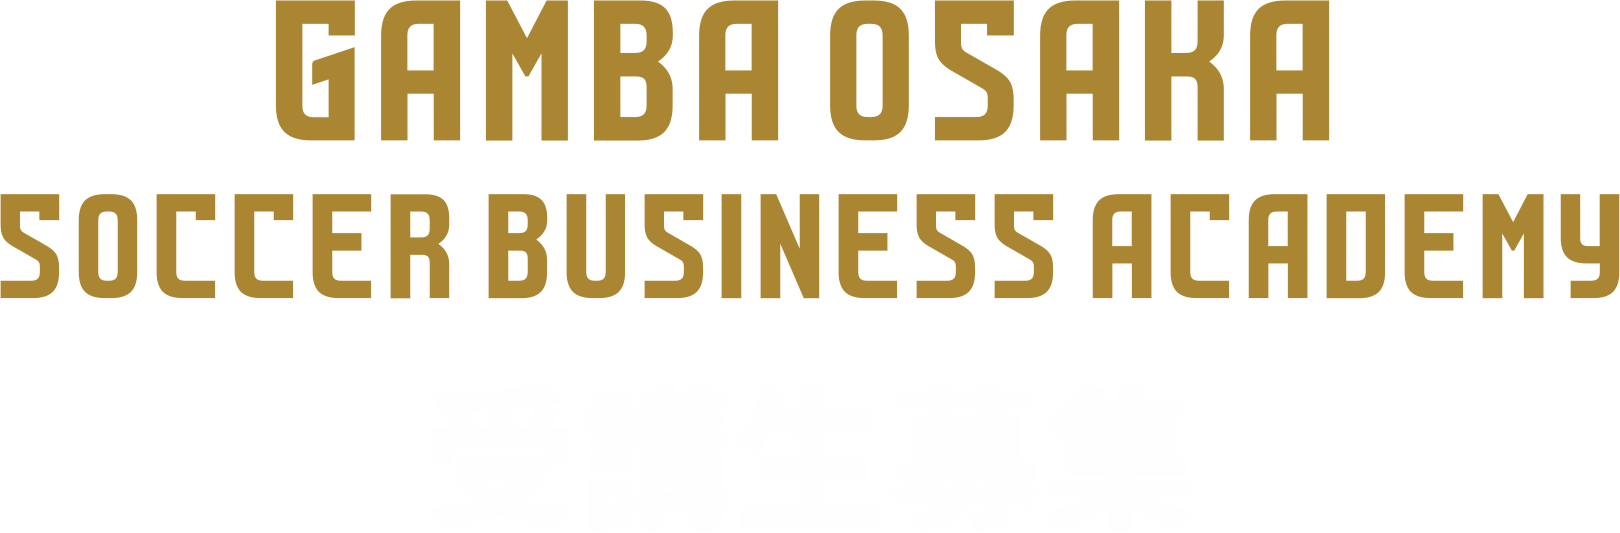 ガンバ大阪サッカービジネスアカデミー 第3期生募集